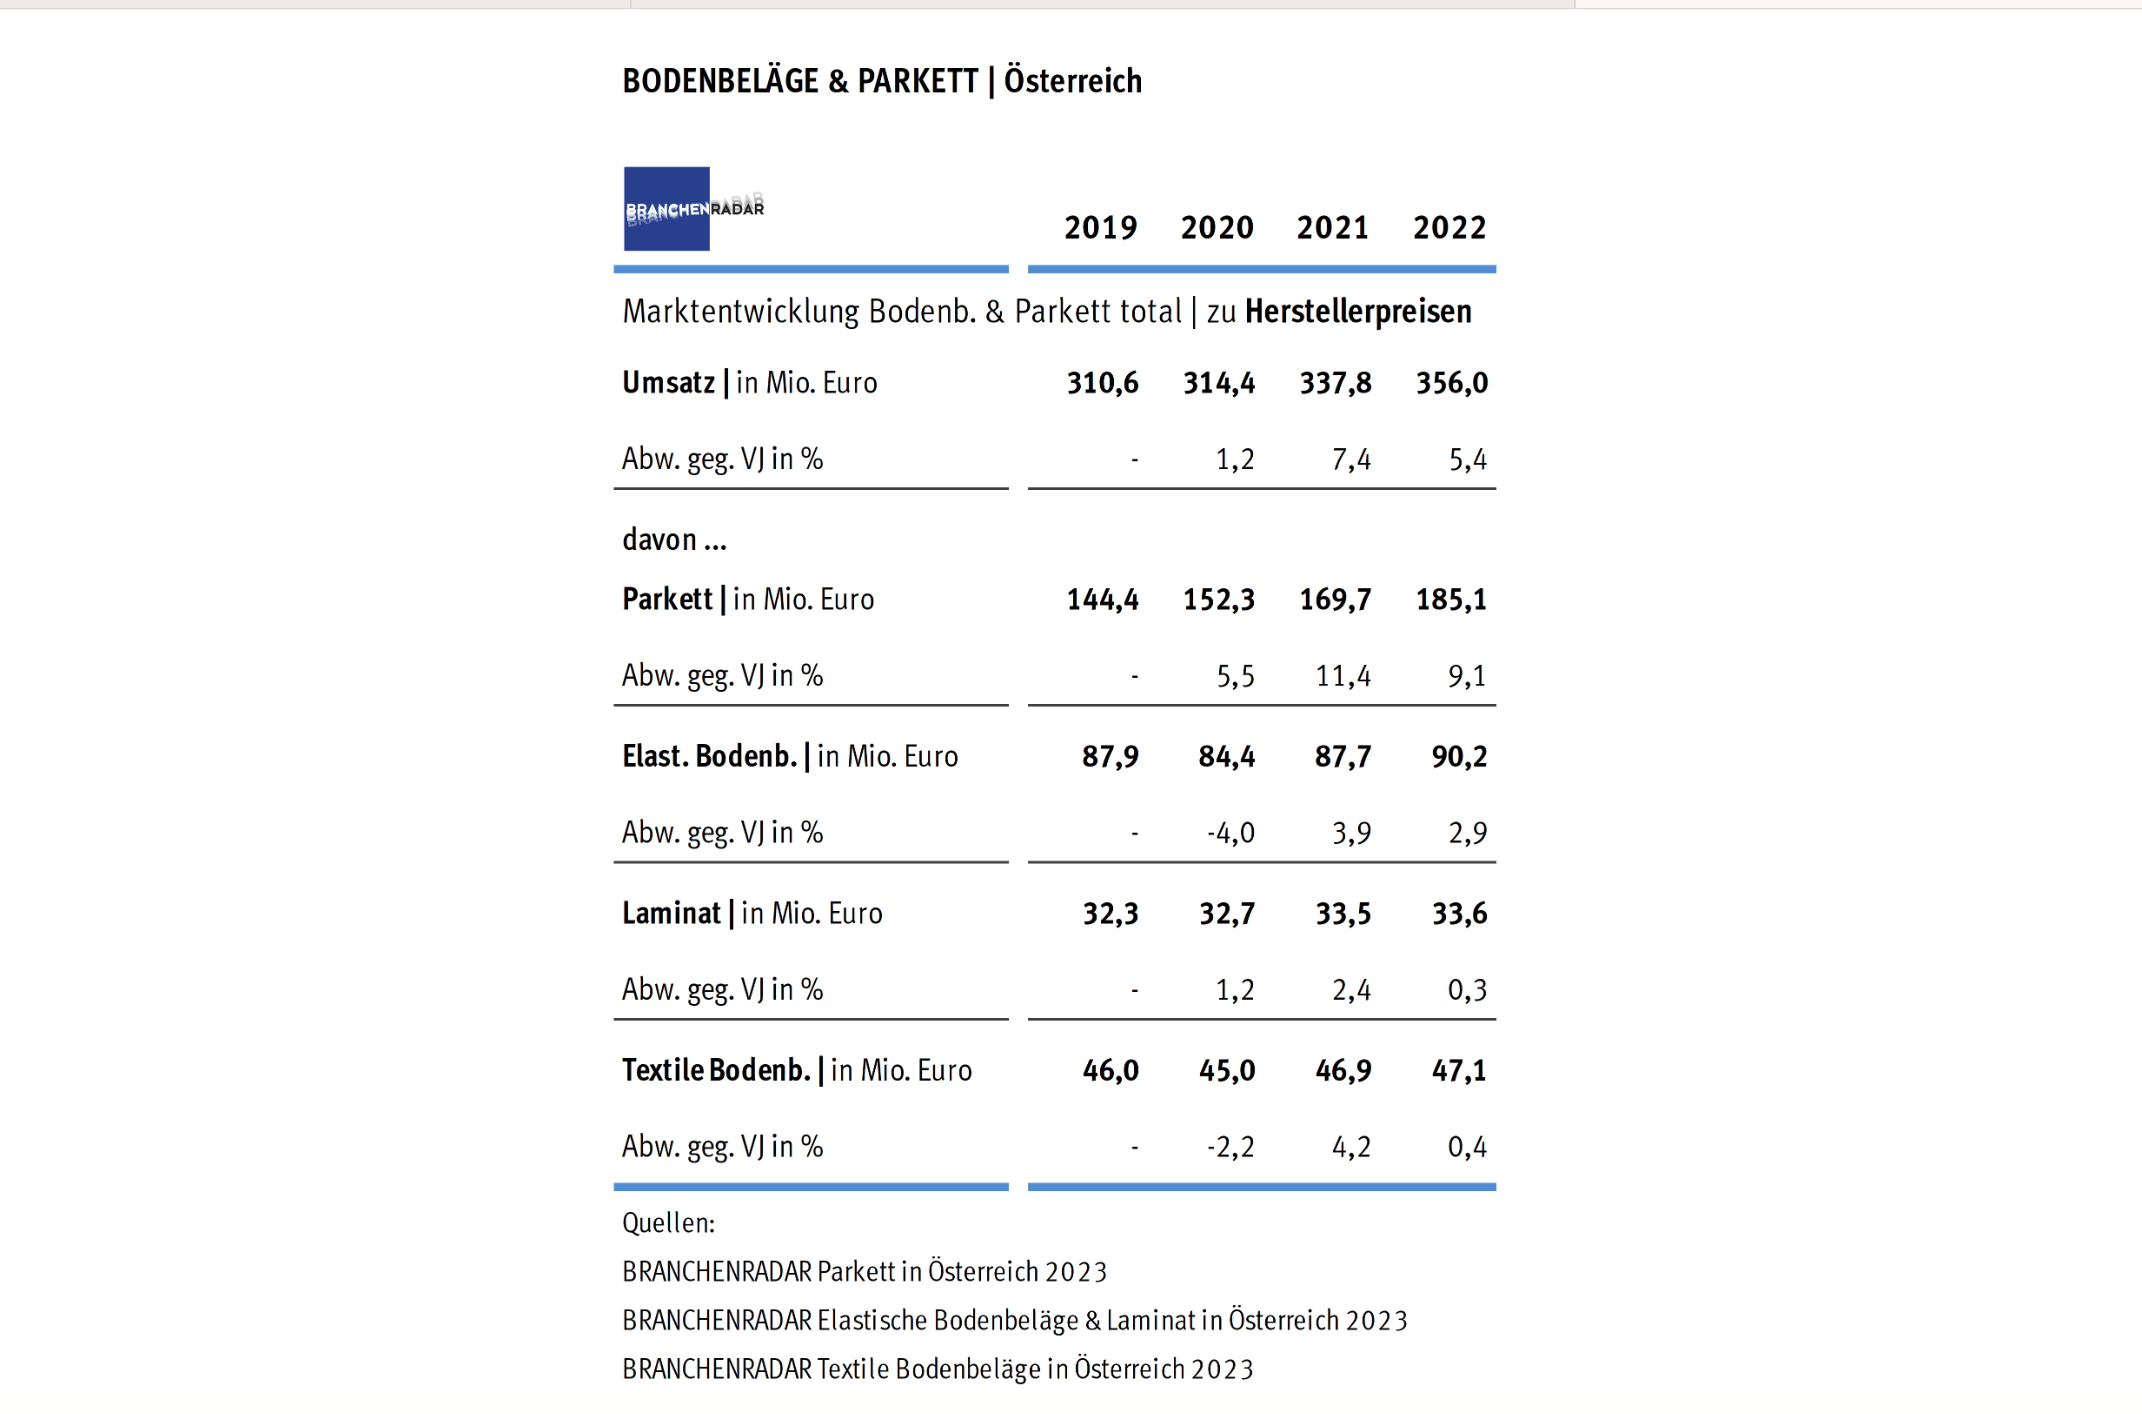 abelle: Marktentwicklung Bodenbeläge und Parkett total in Österreich | Herstellerumsatz in Mio. Euro